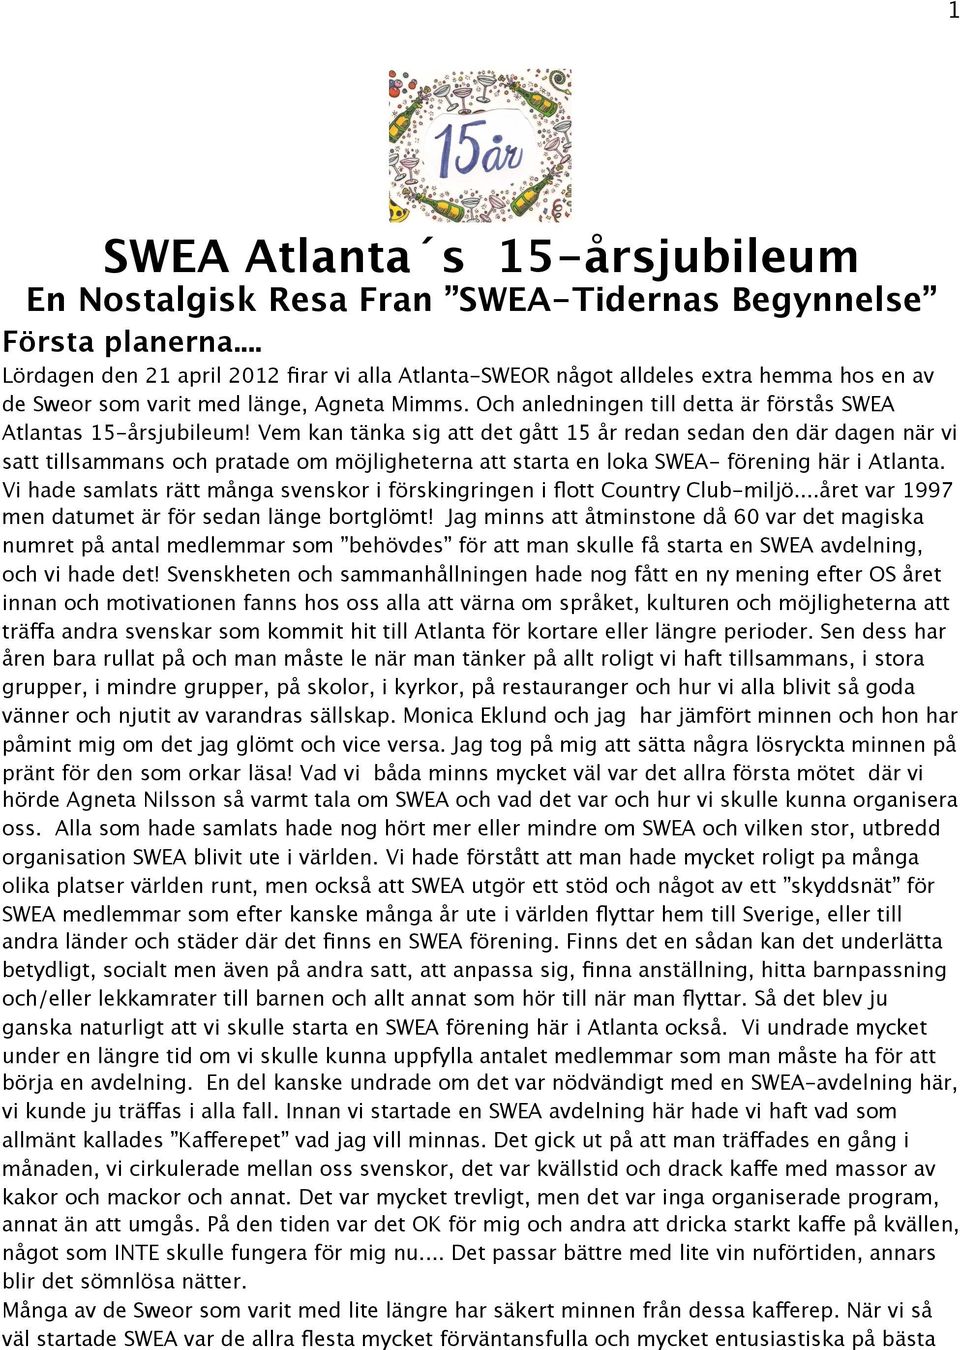 Och anledningen till detta är förstås SWEA Atlantas 15-årsjubileum!